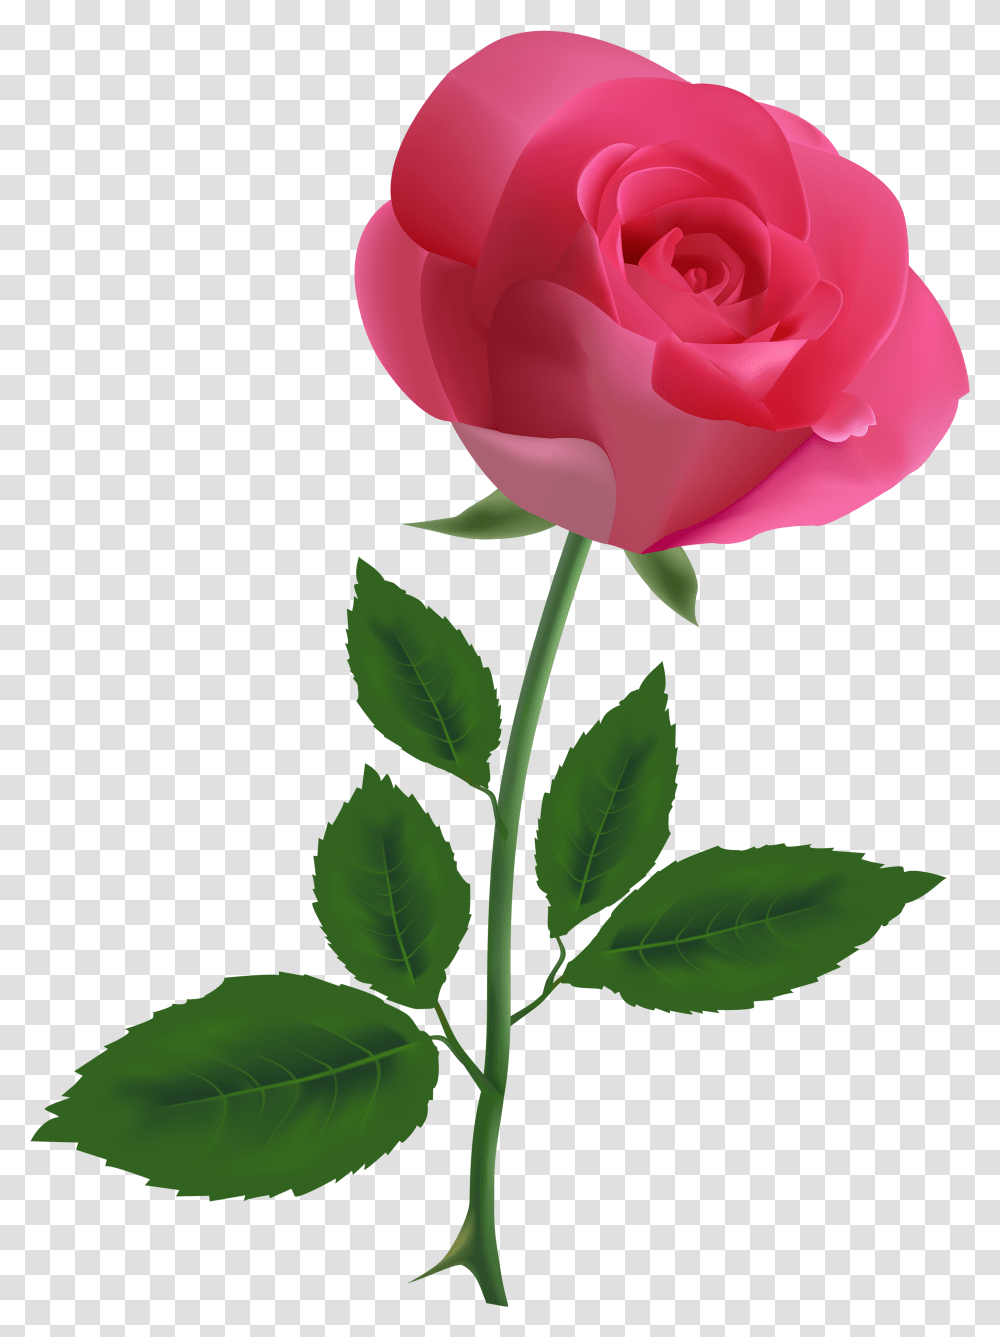 Pink Rose Background, Flower, Plant, Blossom, Petal Transparent Png